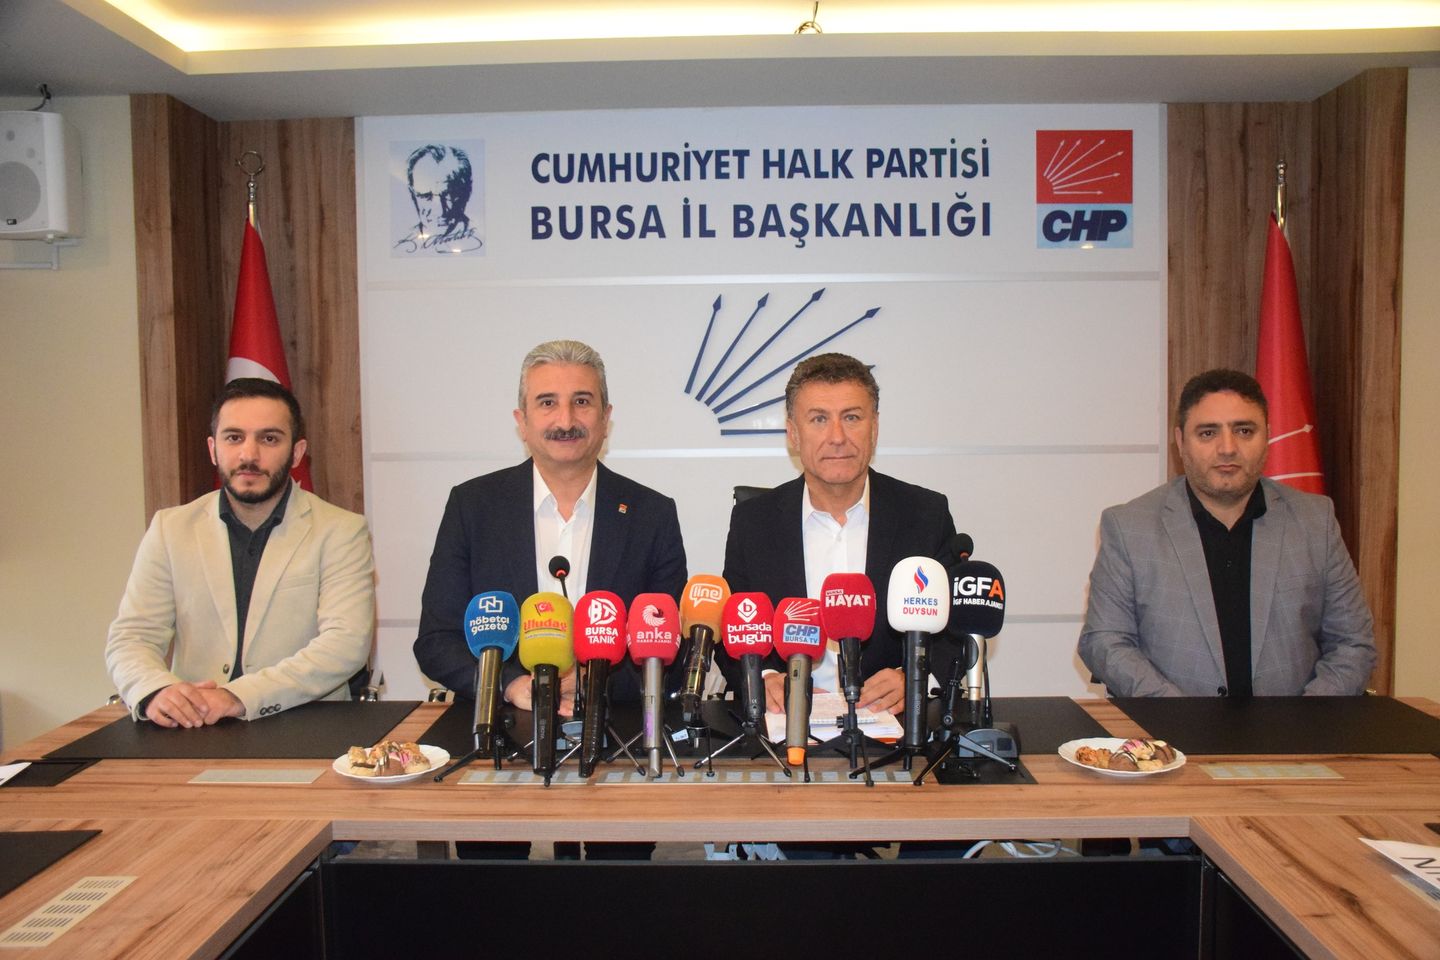 Beyaz Et İhracatı Yasakları ve Türkiye'nin Gıda Güvenliği Tartışması